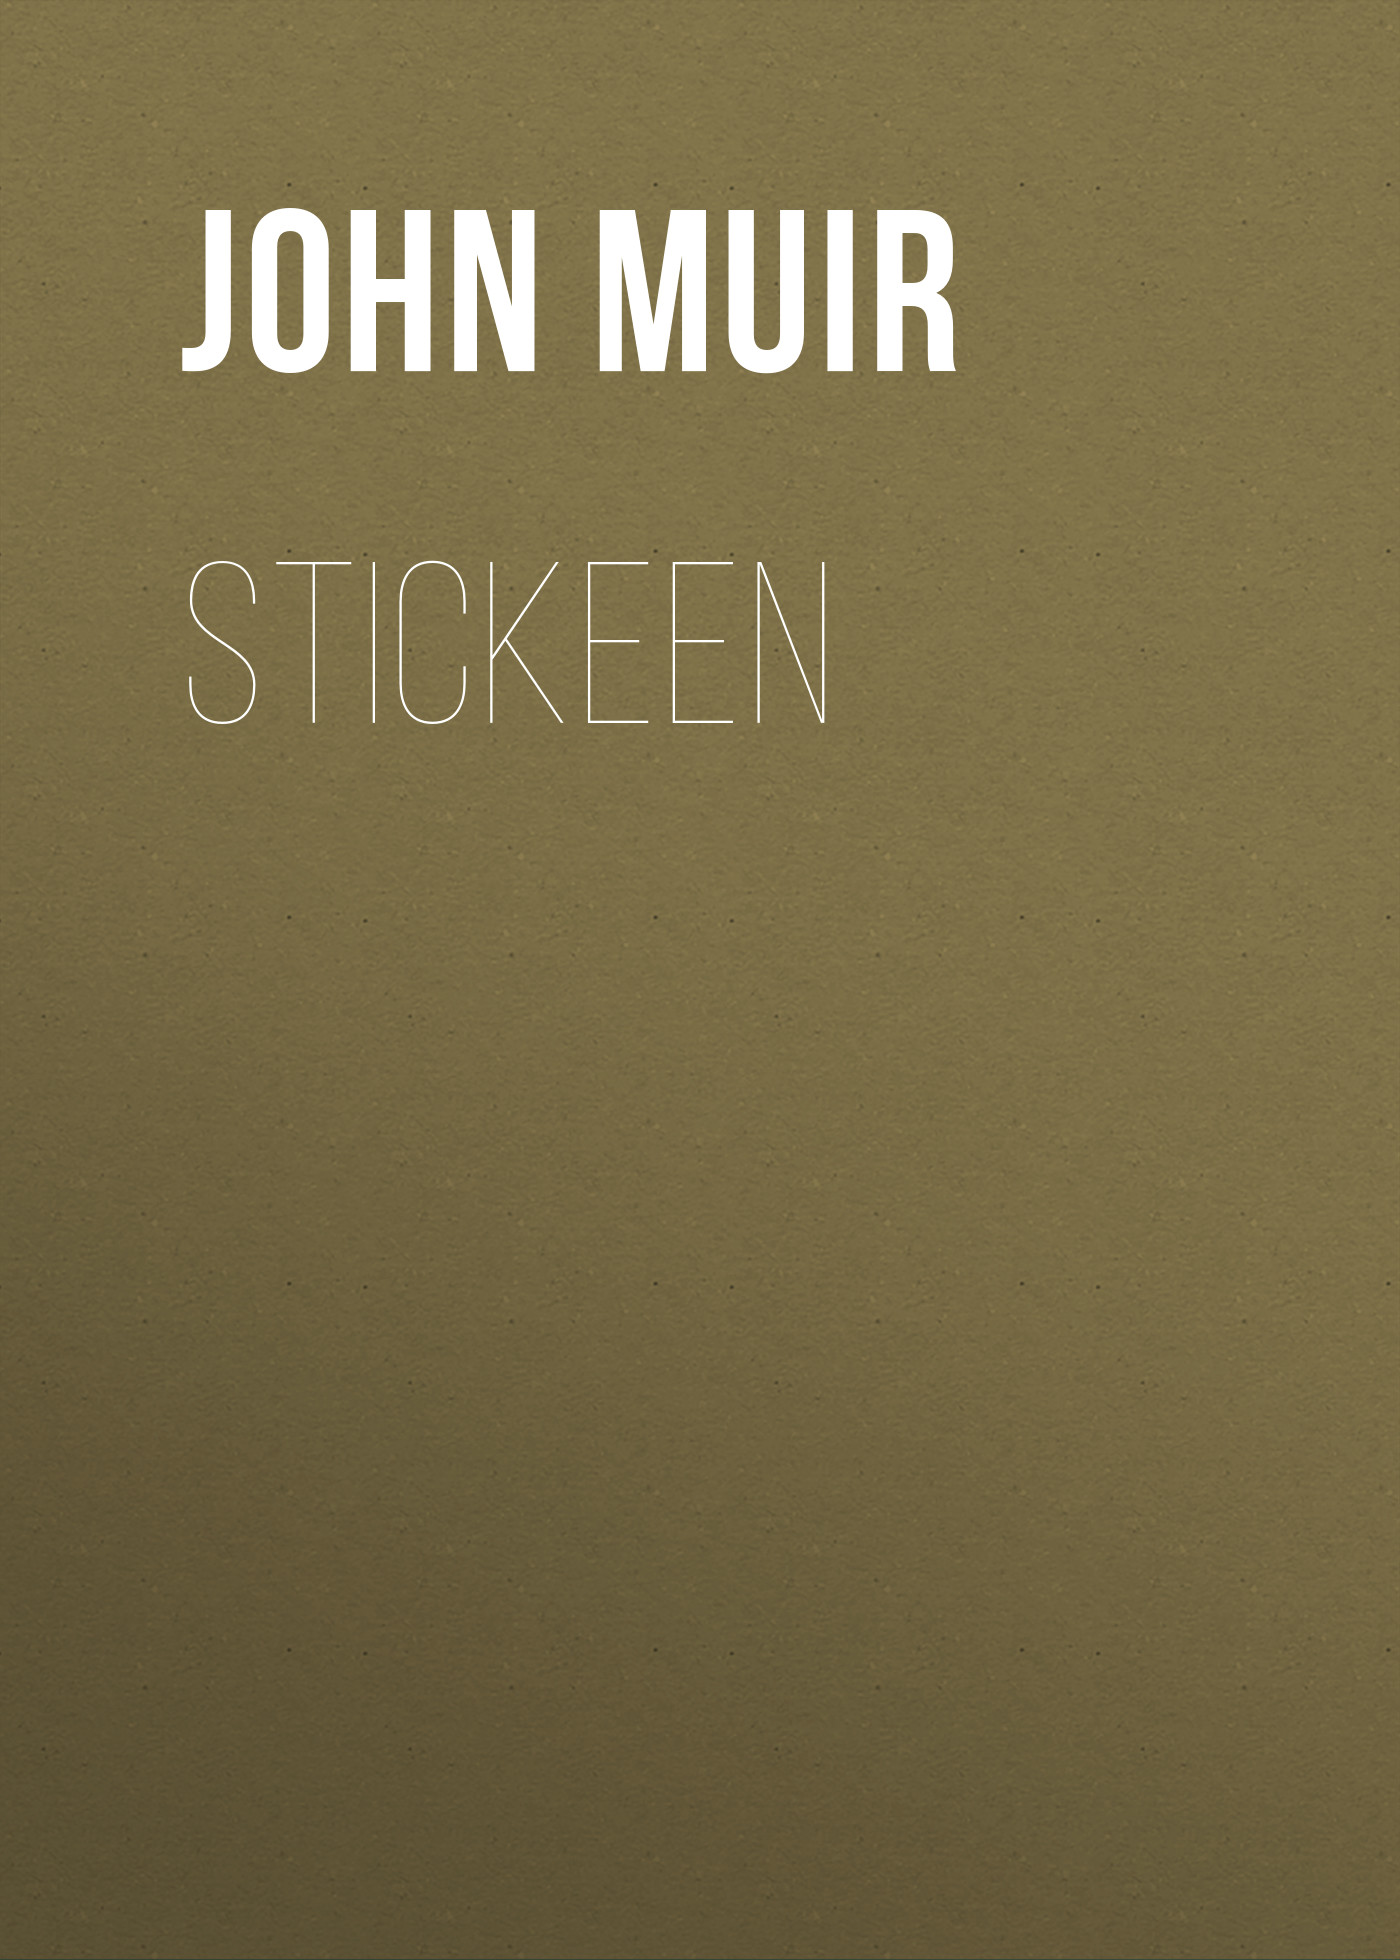 Книга Stickeen из серии , созданная John Muir, может относится к жанру Зарубежный юмор, Юмор: прочее, Биология, Зарубежная старинная литература. Стоимость книги Stickeen  с идентификатором 36096045 составляет 0 руб.